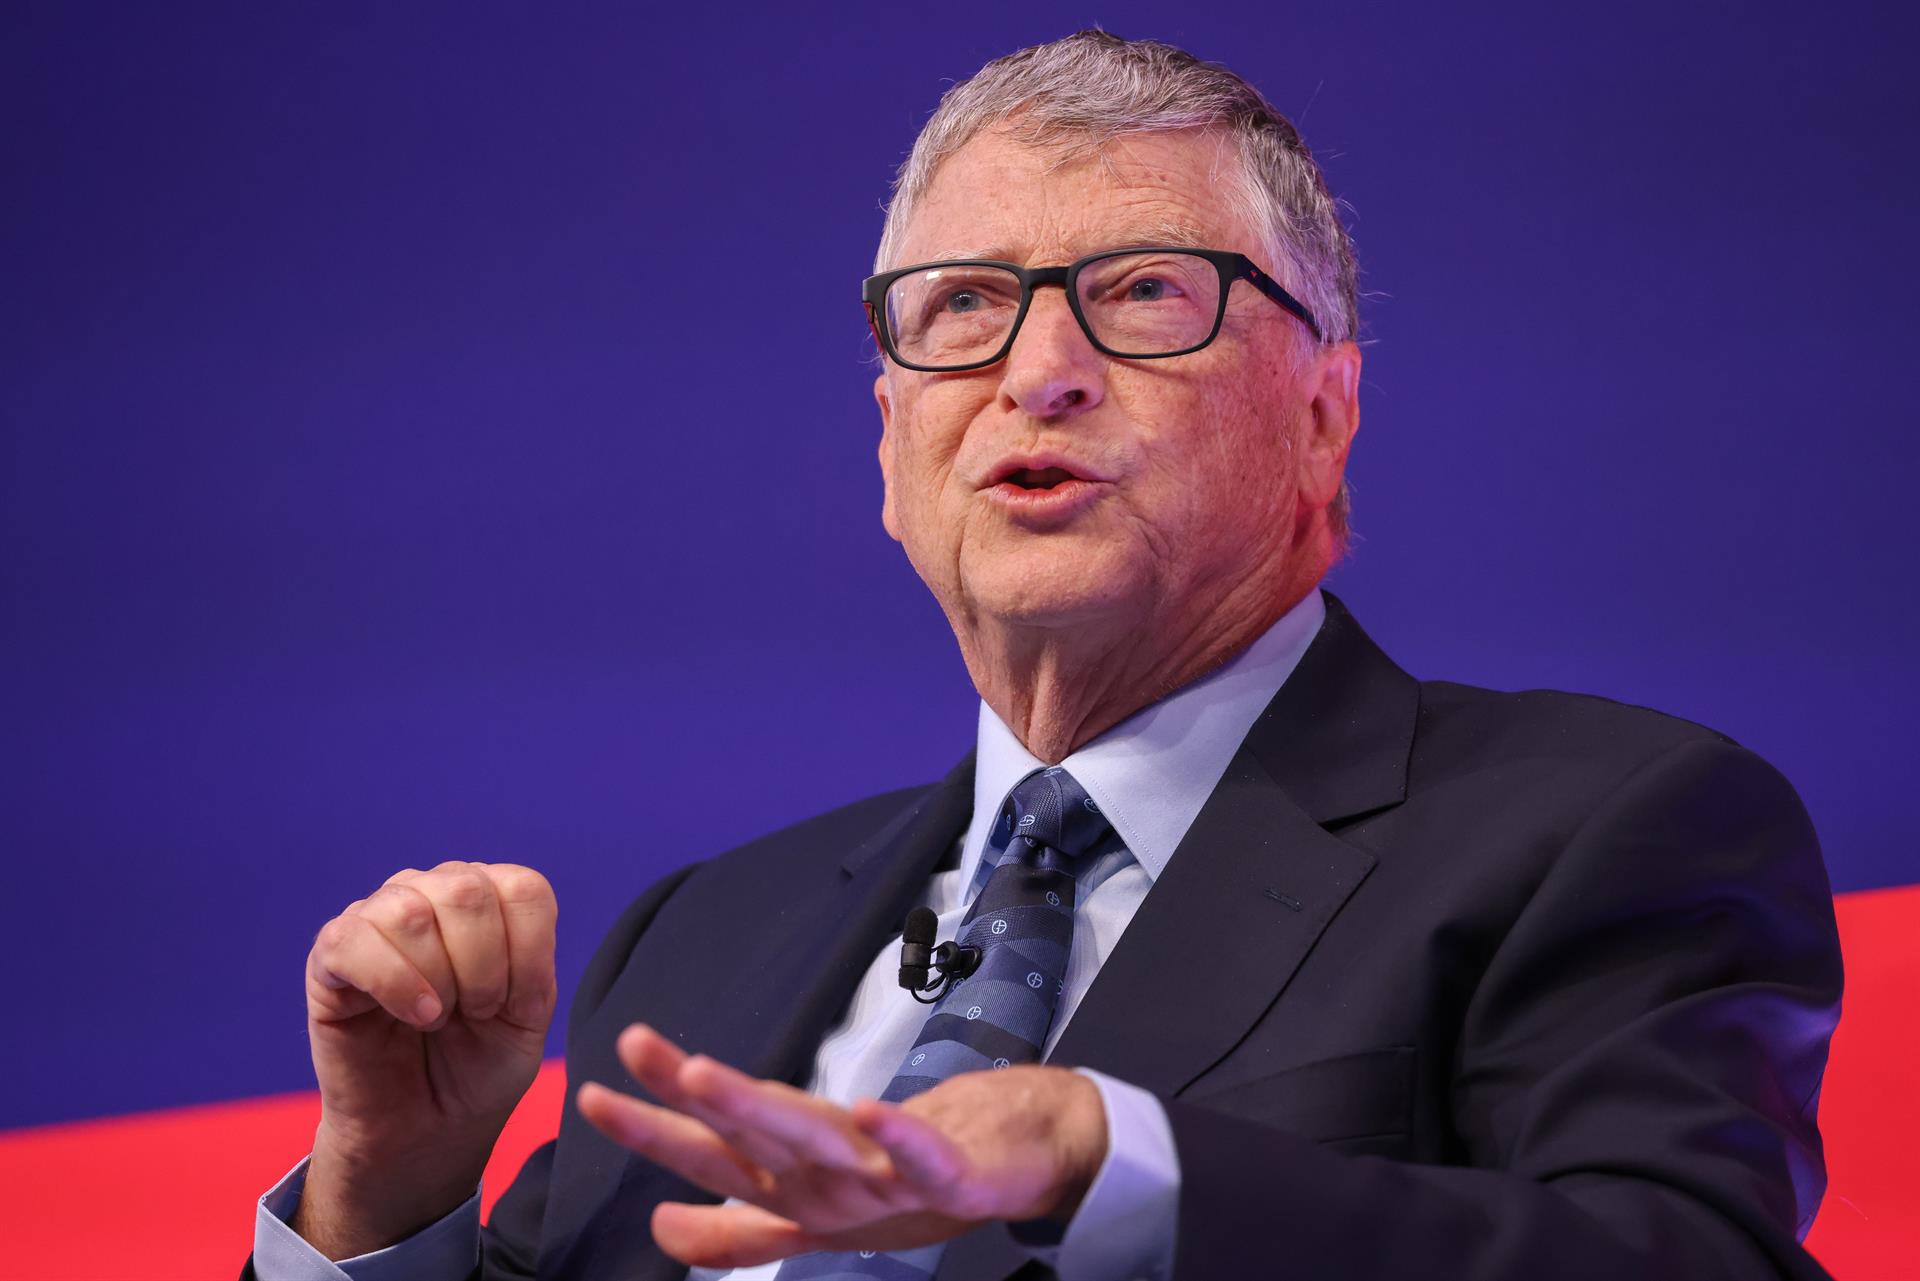 Bill Gates recibe críticas de antivacunas tras anunciar contagio covid